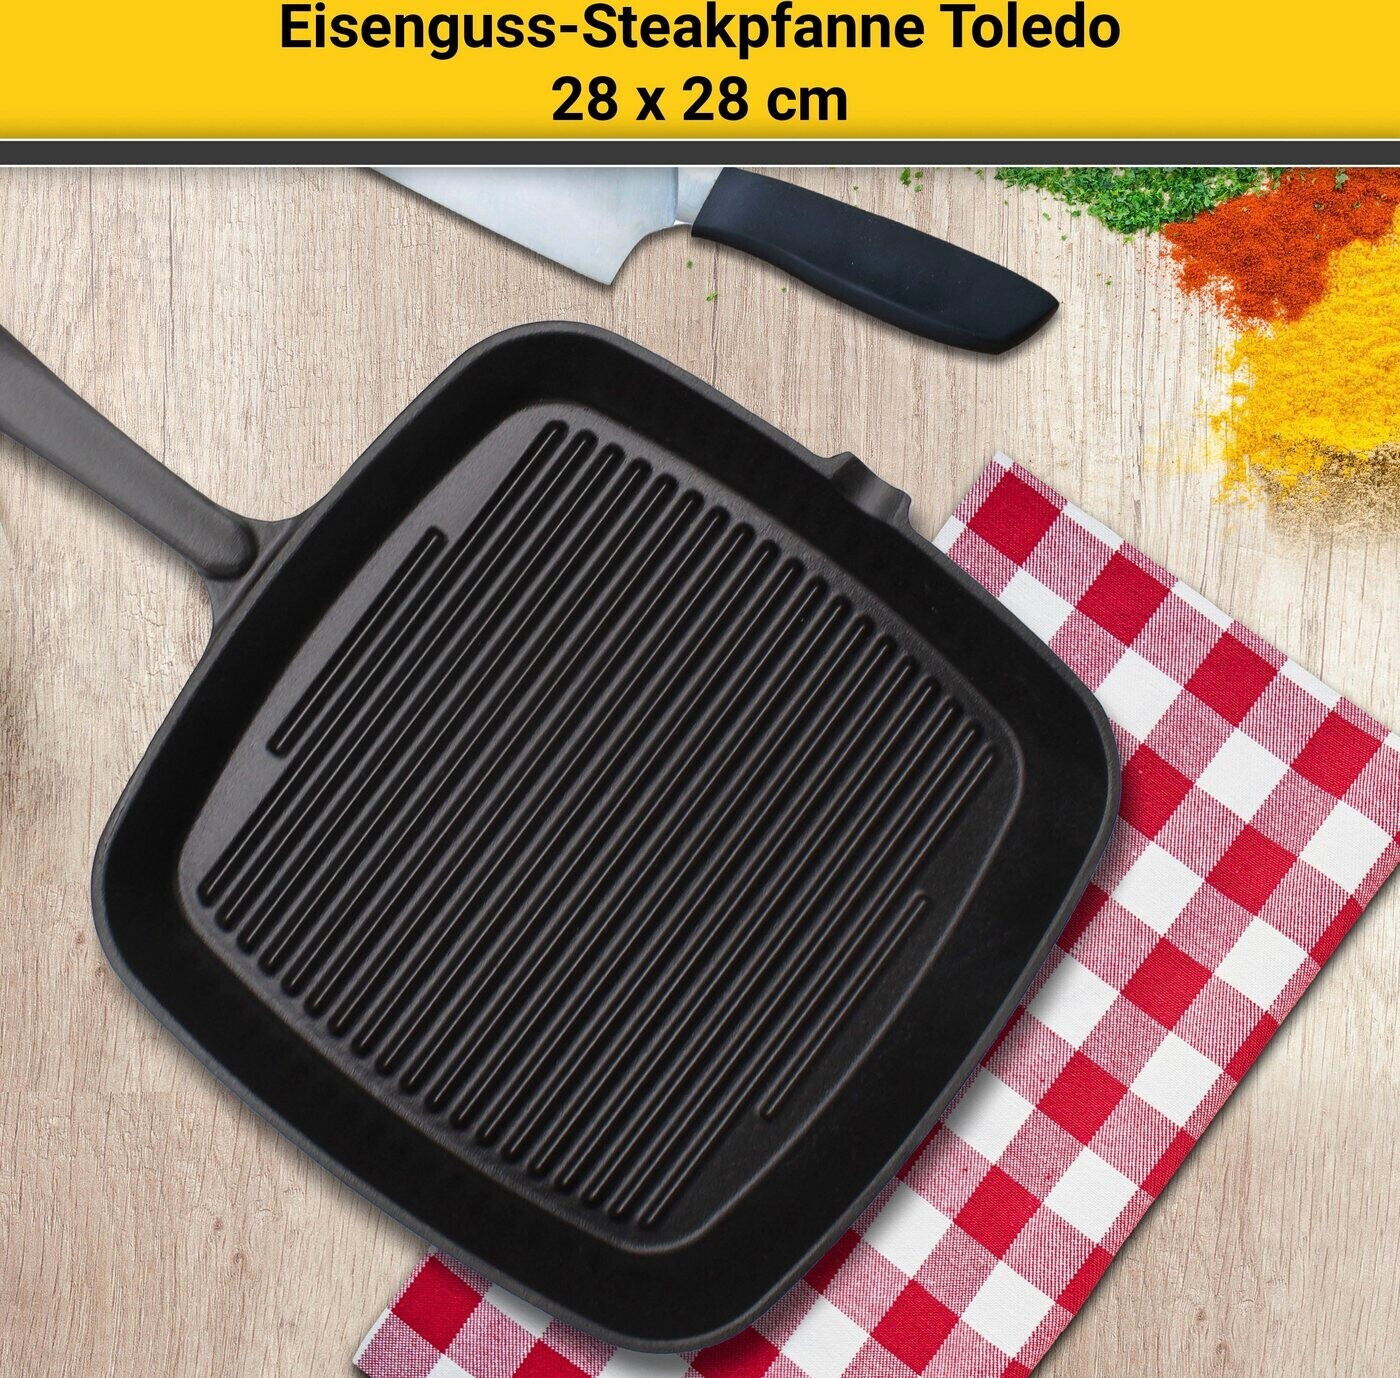 Krüger Toledo Steakpfanne (28 cm) | Preisvergleich € bei schwarz 34,99 ab